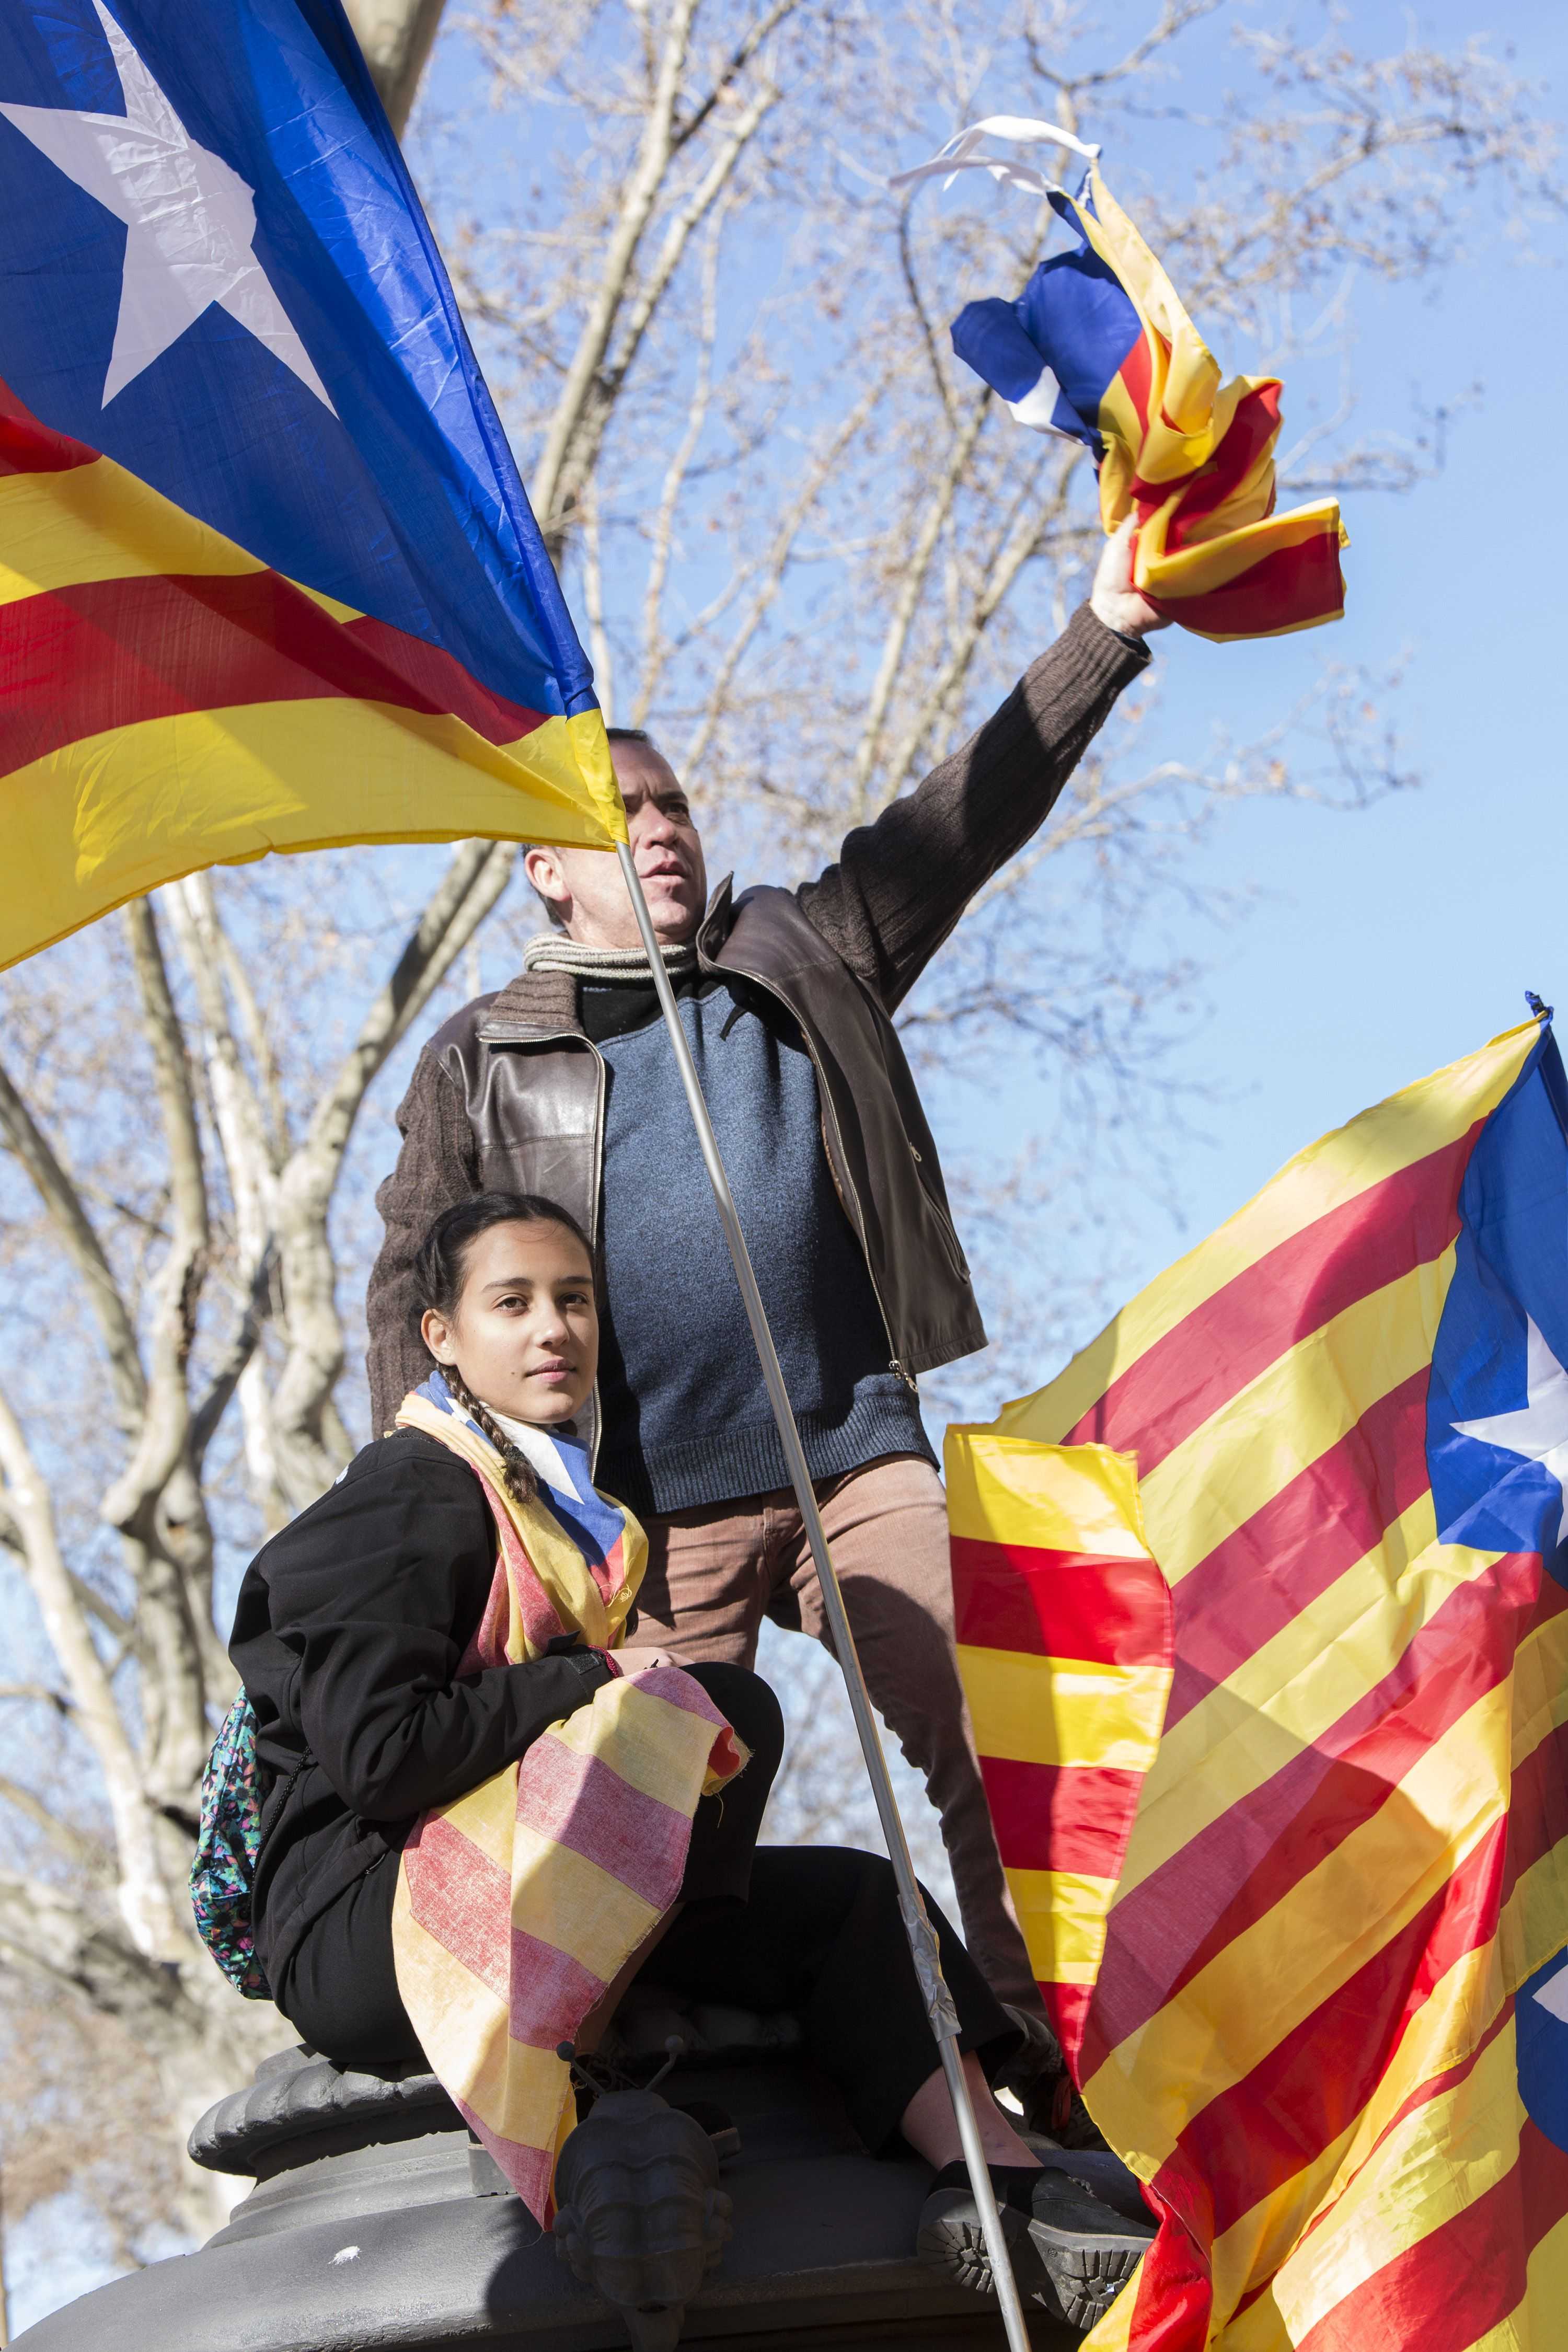 Catalunya emprén un "procés polític inèdit a Europa", segons l'agència argentina Télam